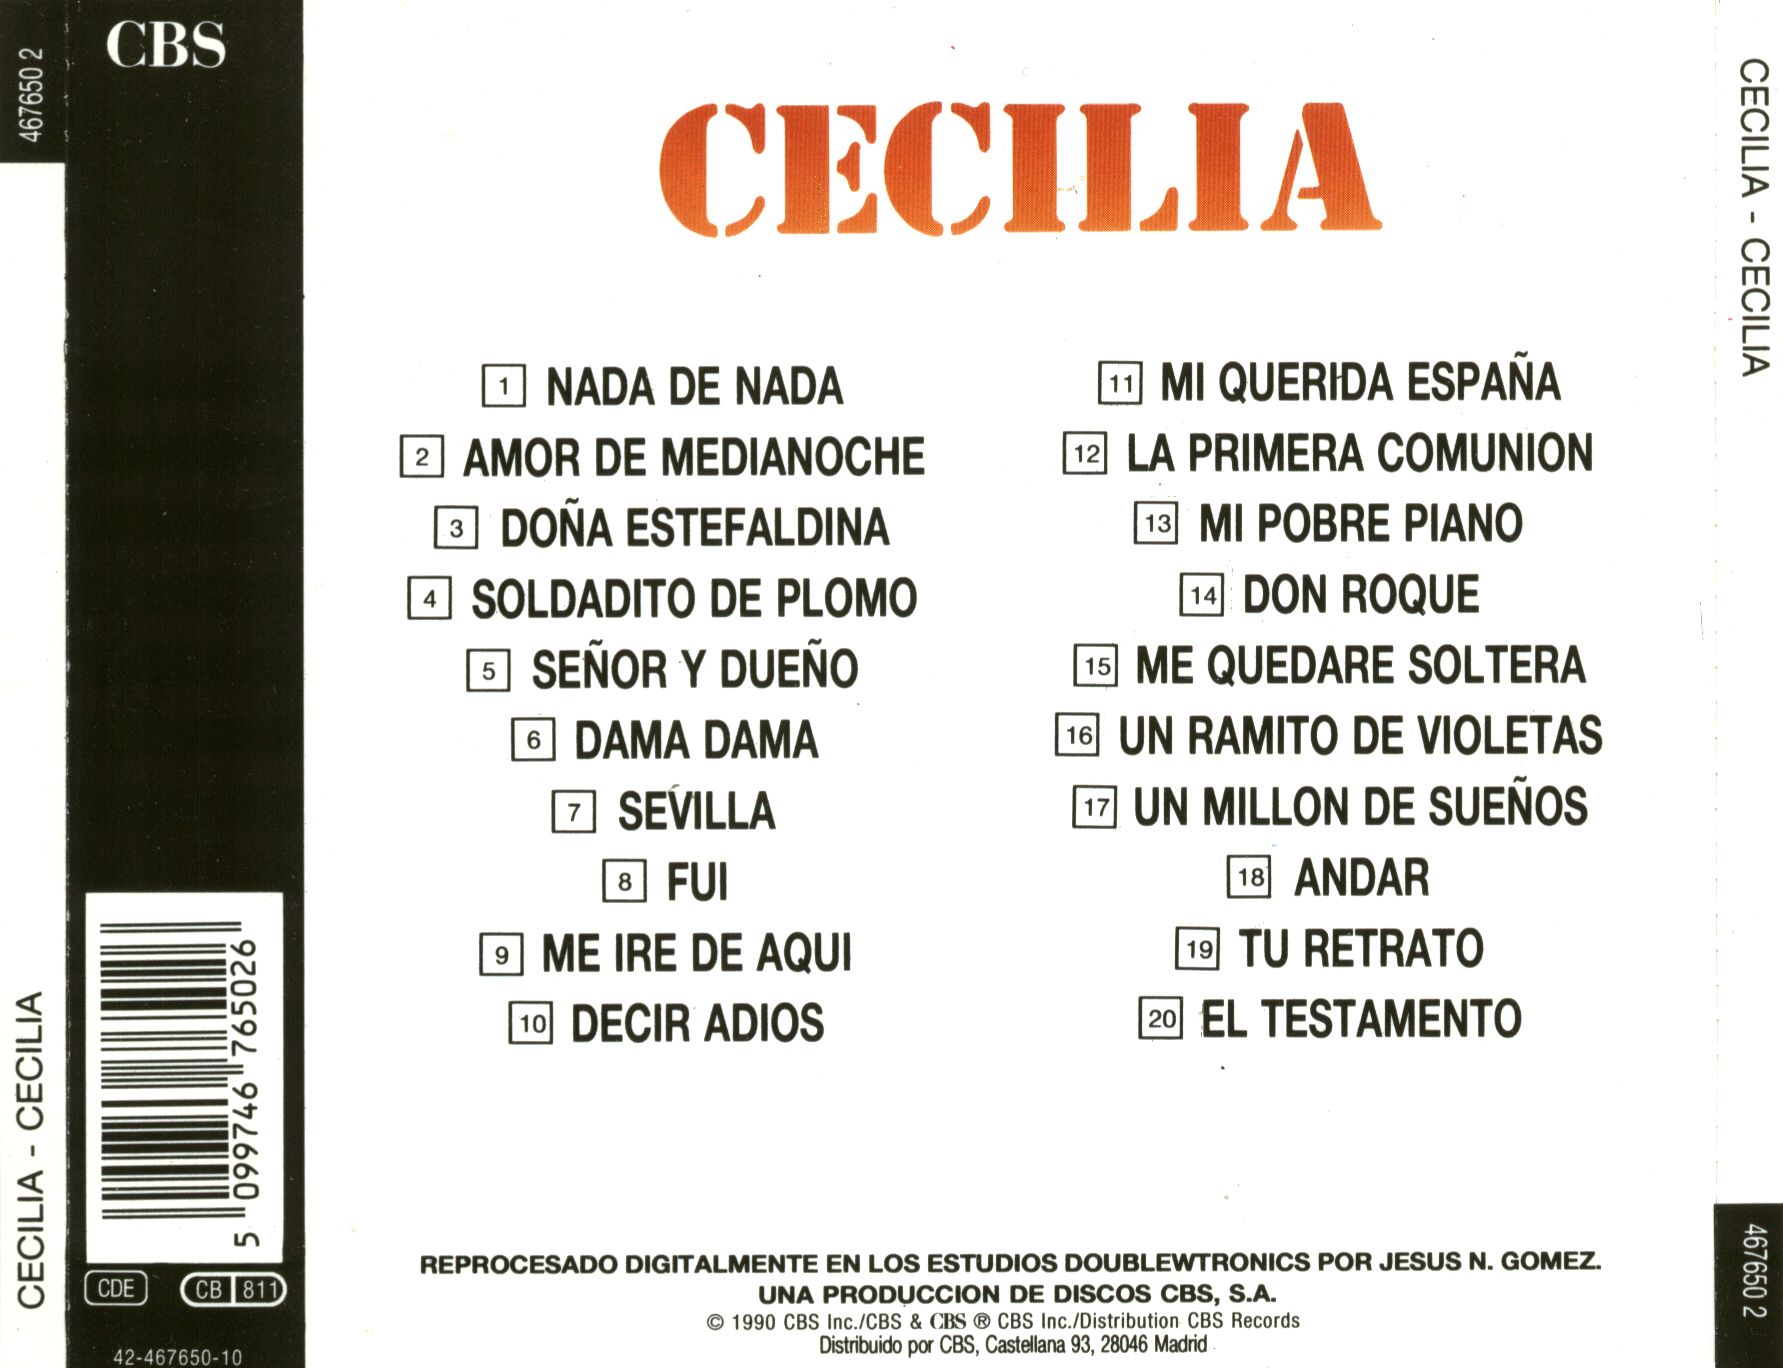 Cartula Trasera de Cecilia - 20 Grandes Canciones